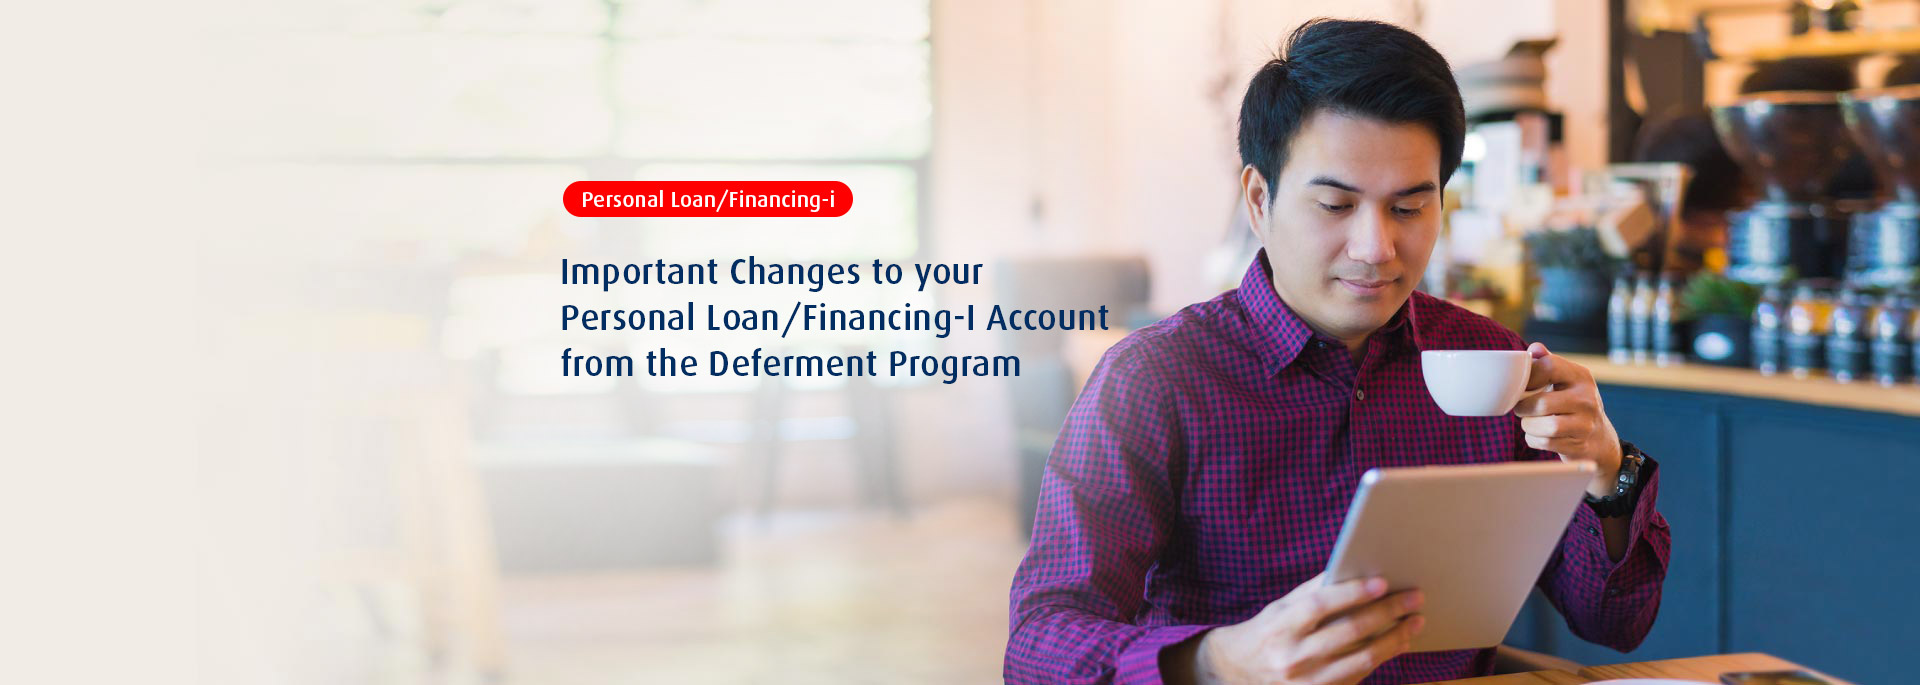 Personal Loan/Financing-i Moratorium Update